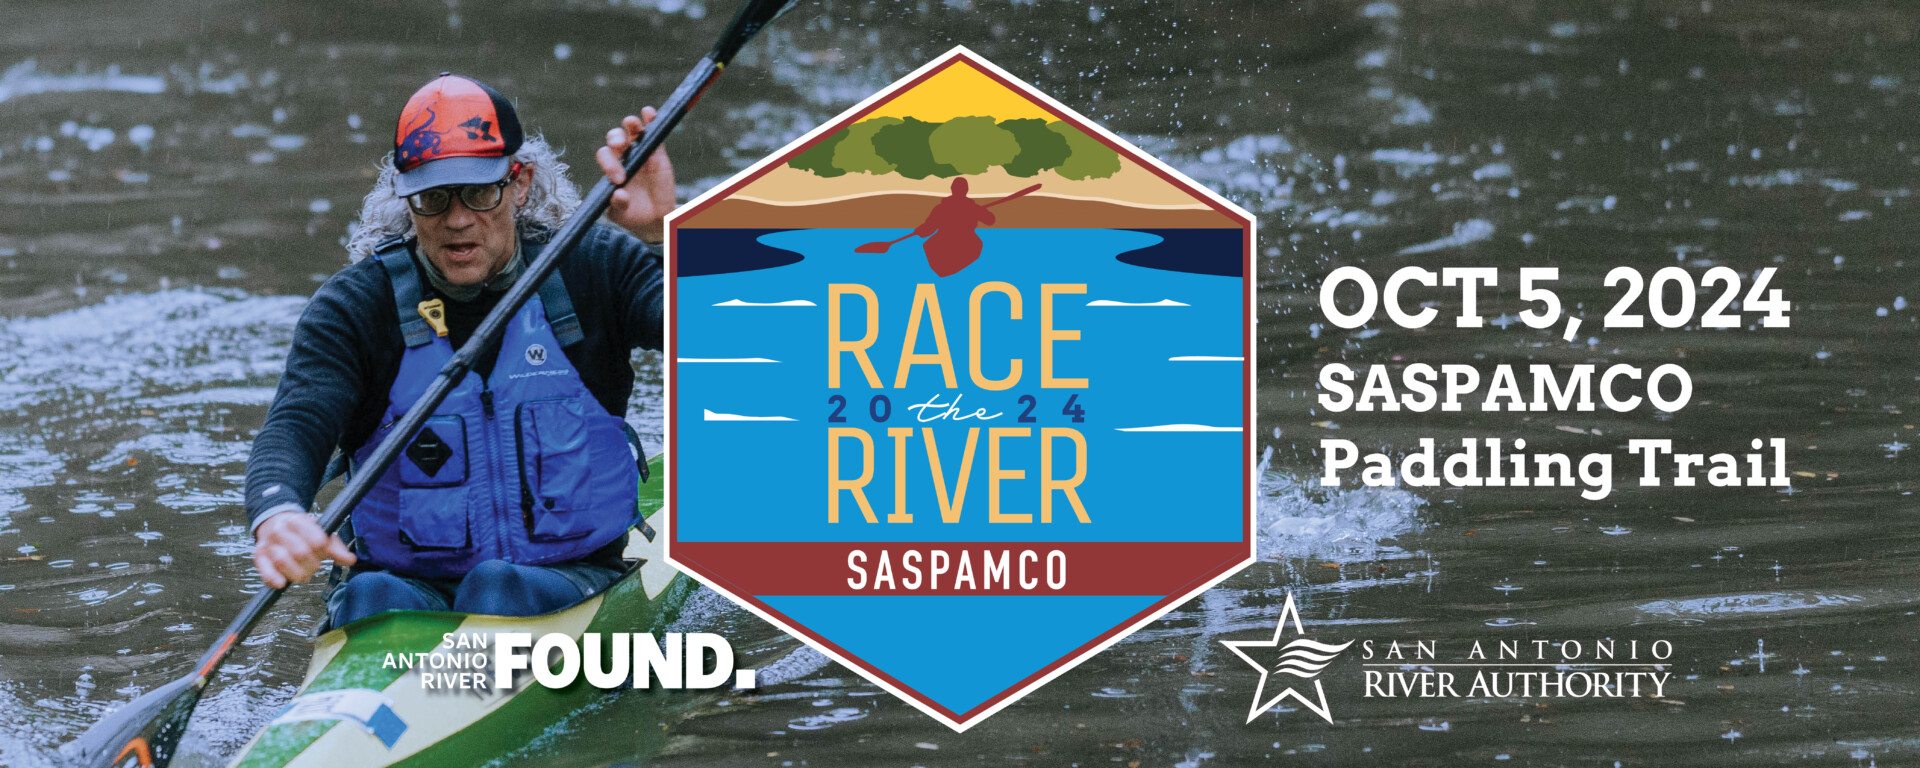 Race the River SASPAMCO